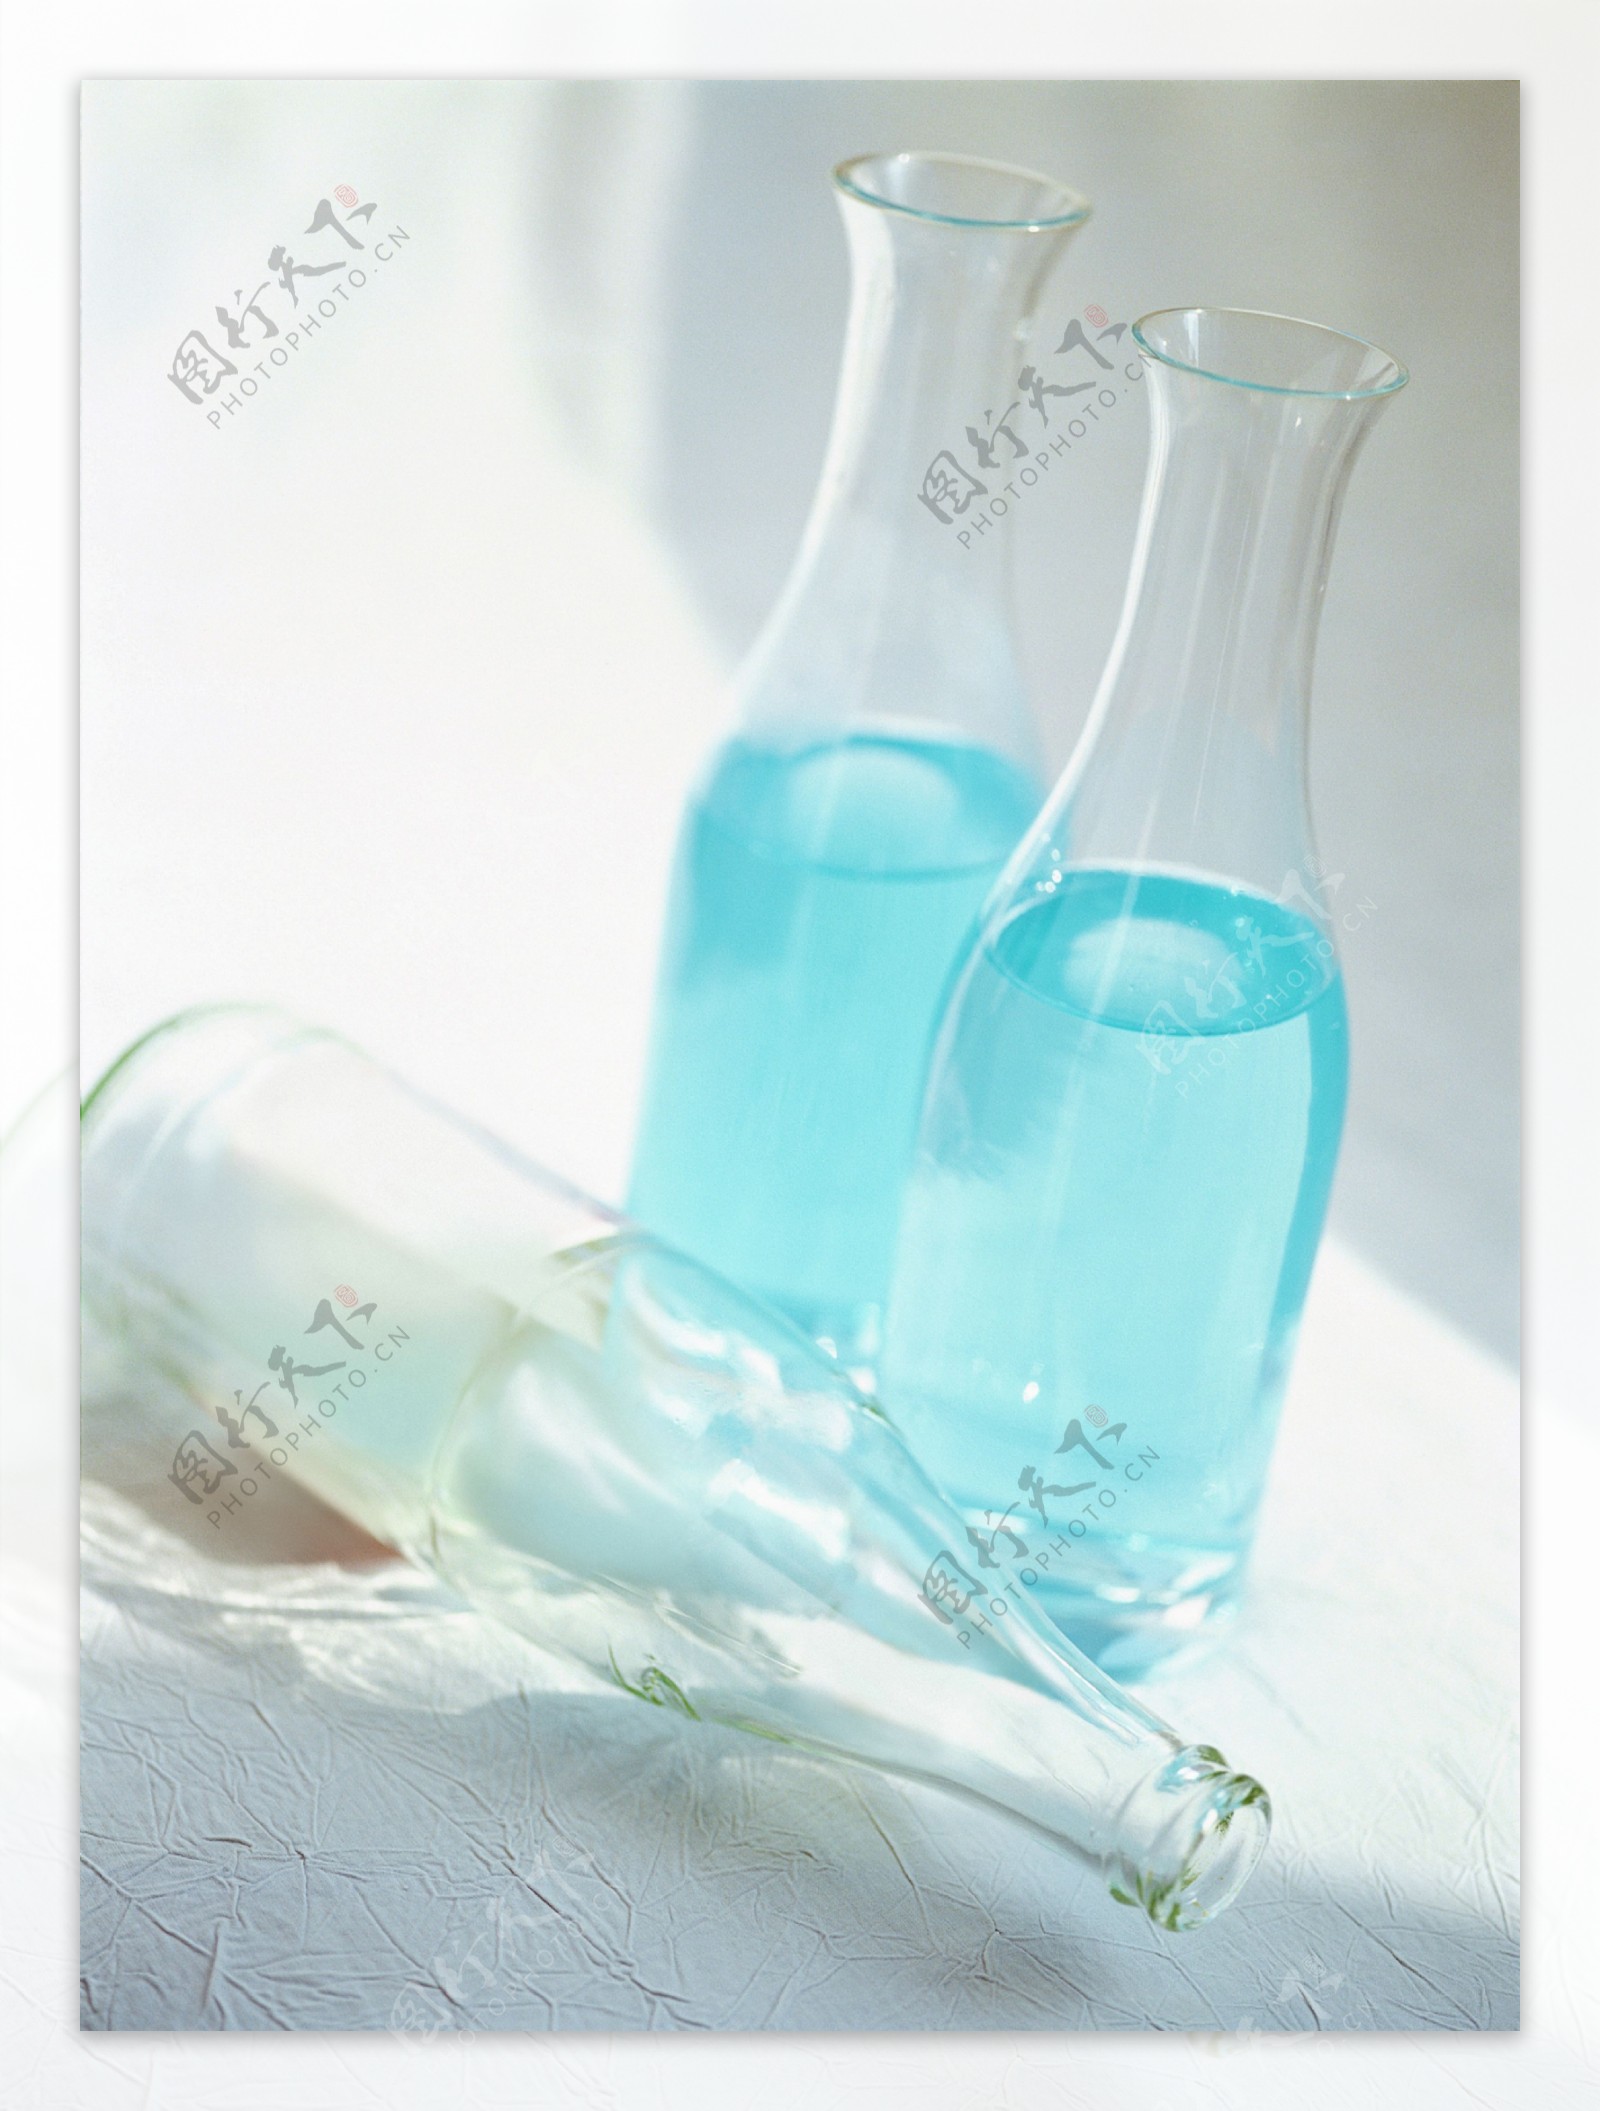 静物物品创意组合造型玻璃瓶子蓝色水